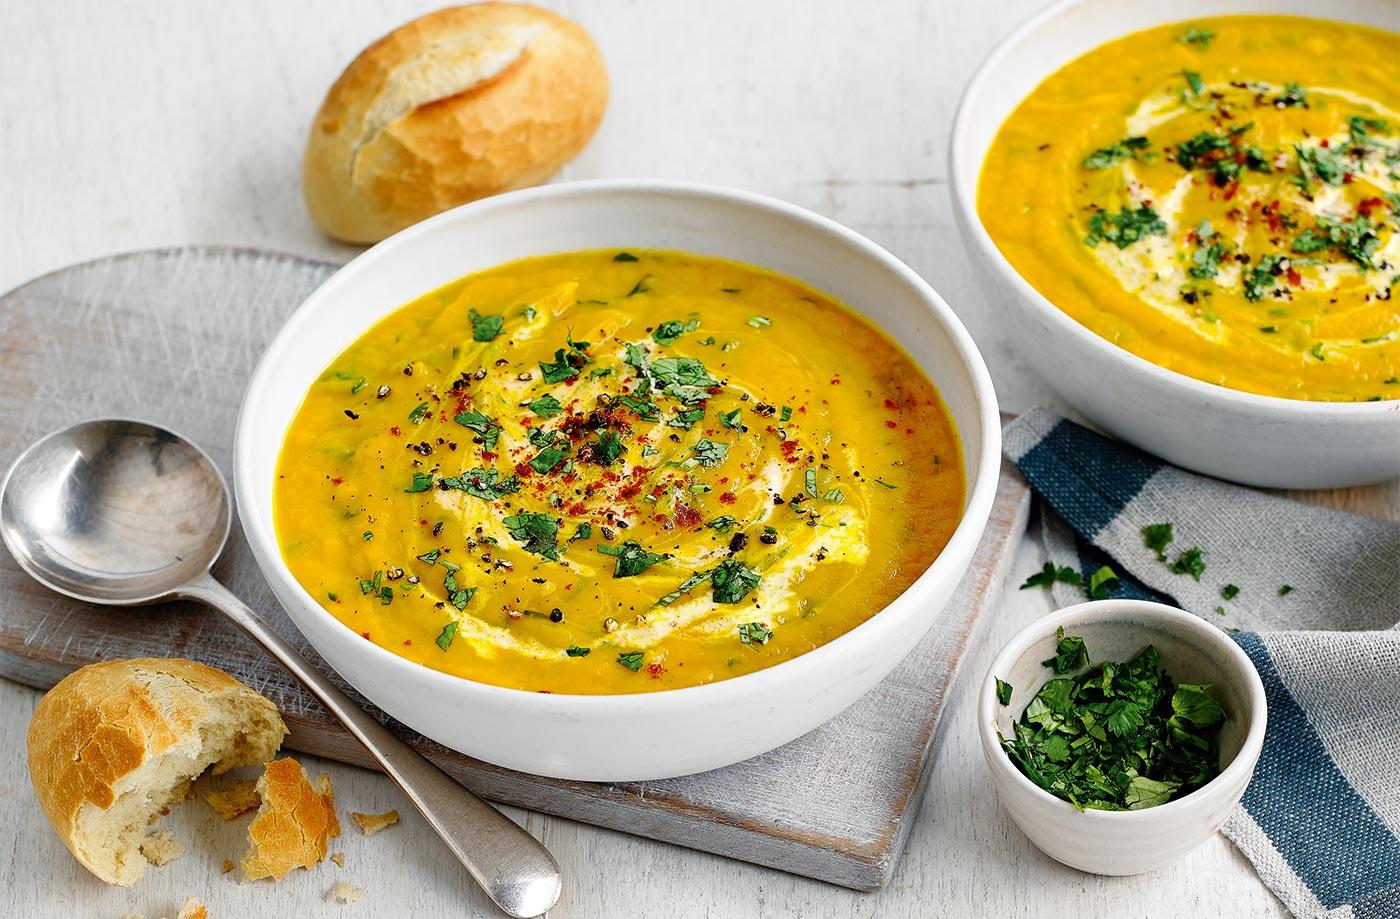 Чи дійсно потрібно їсти суп, щоб бути здоровим – відповідь гакстроентеролога